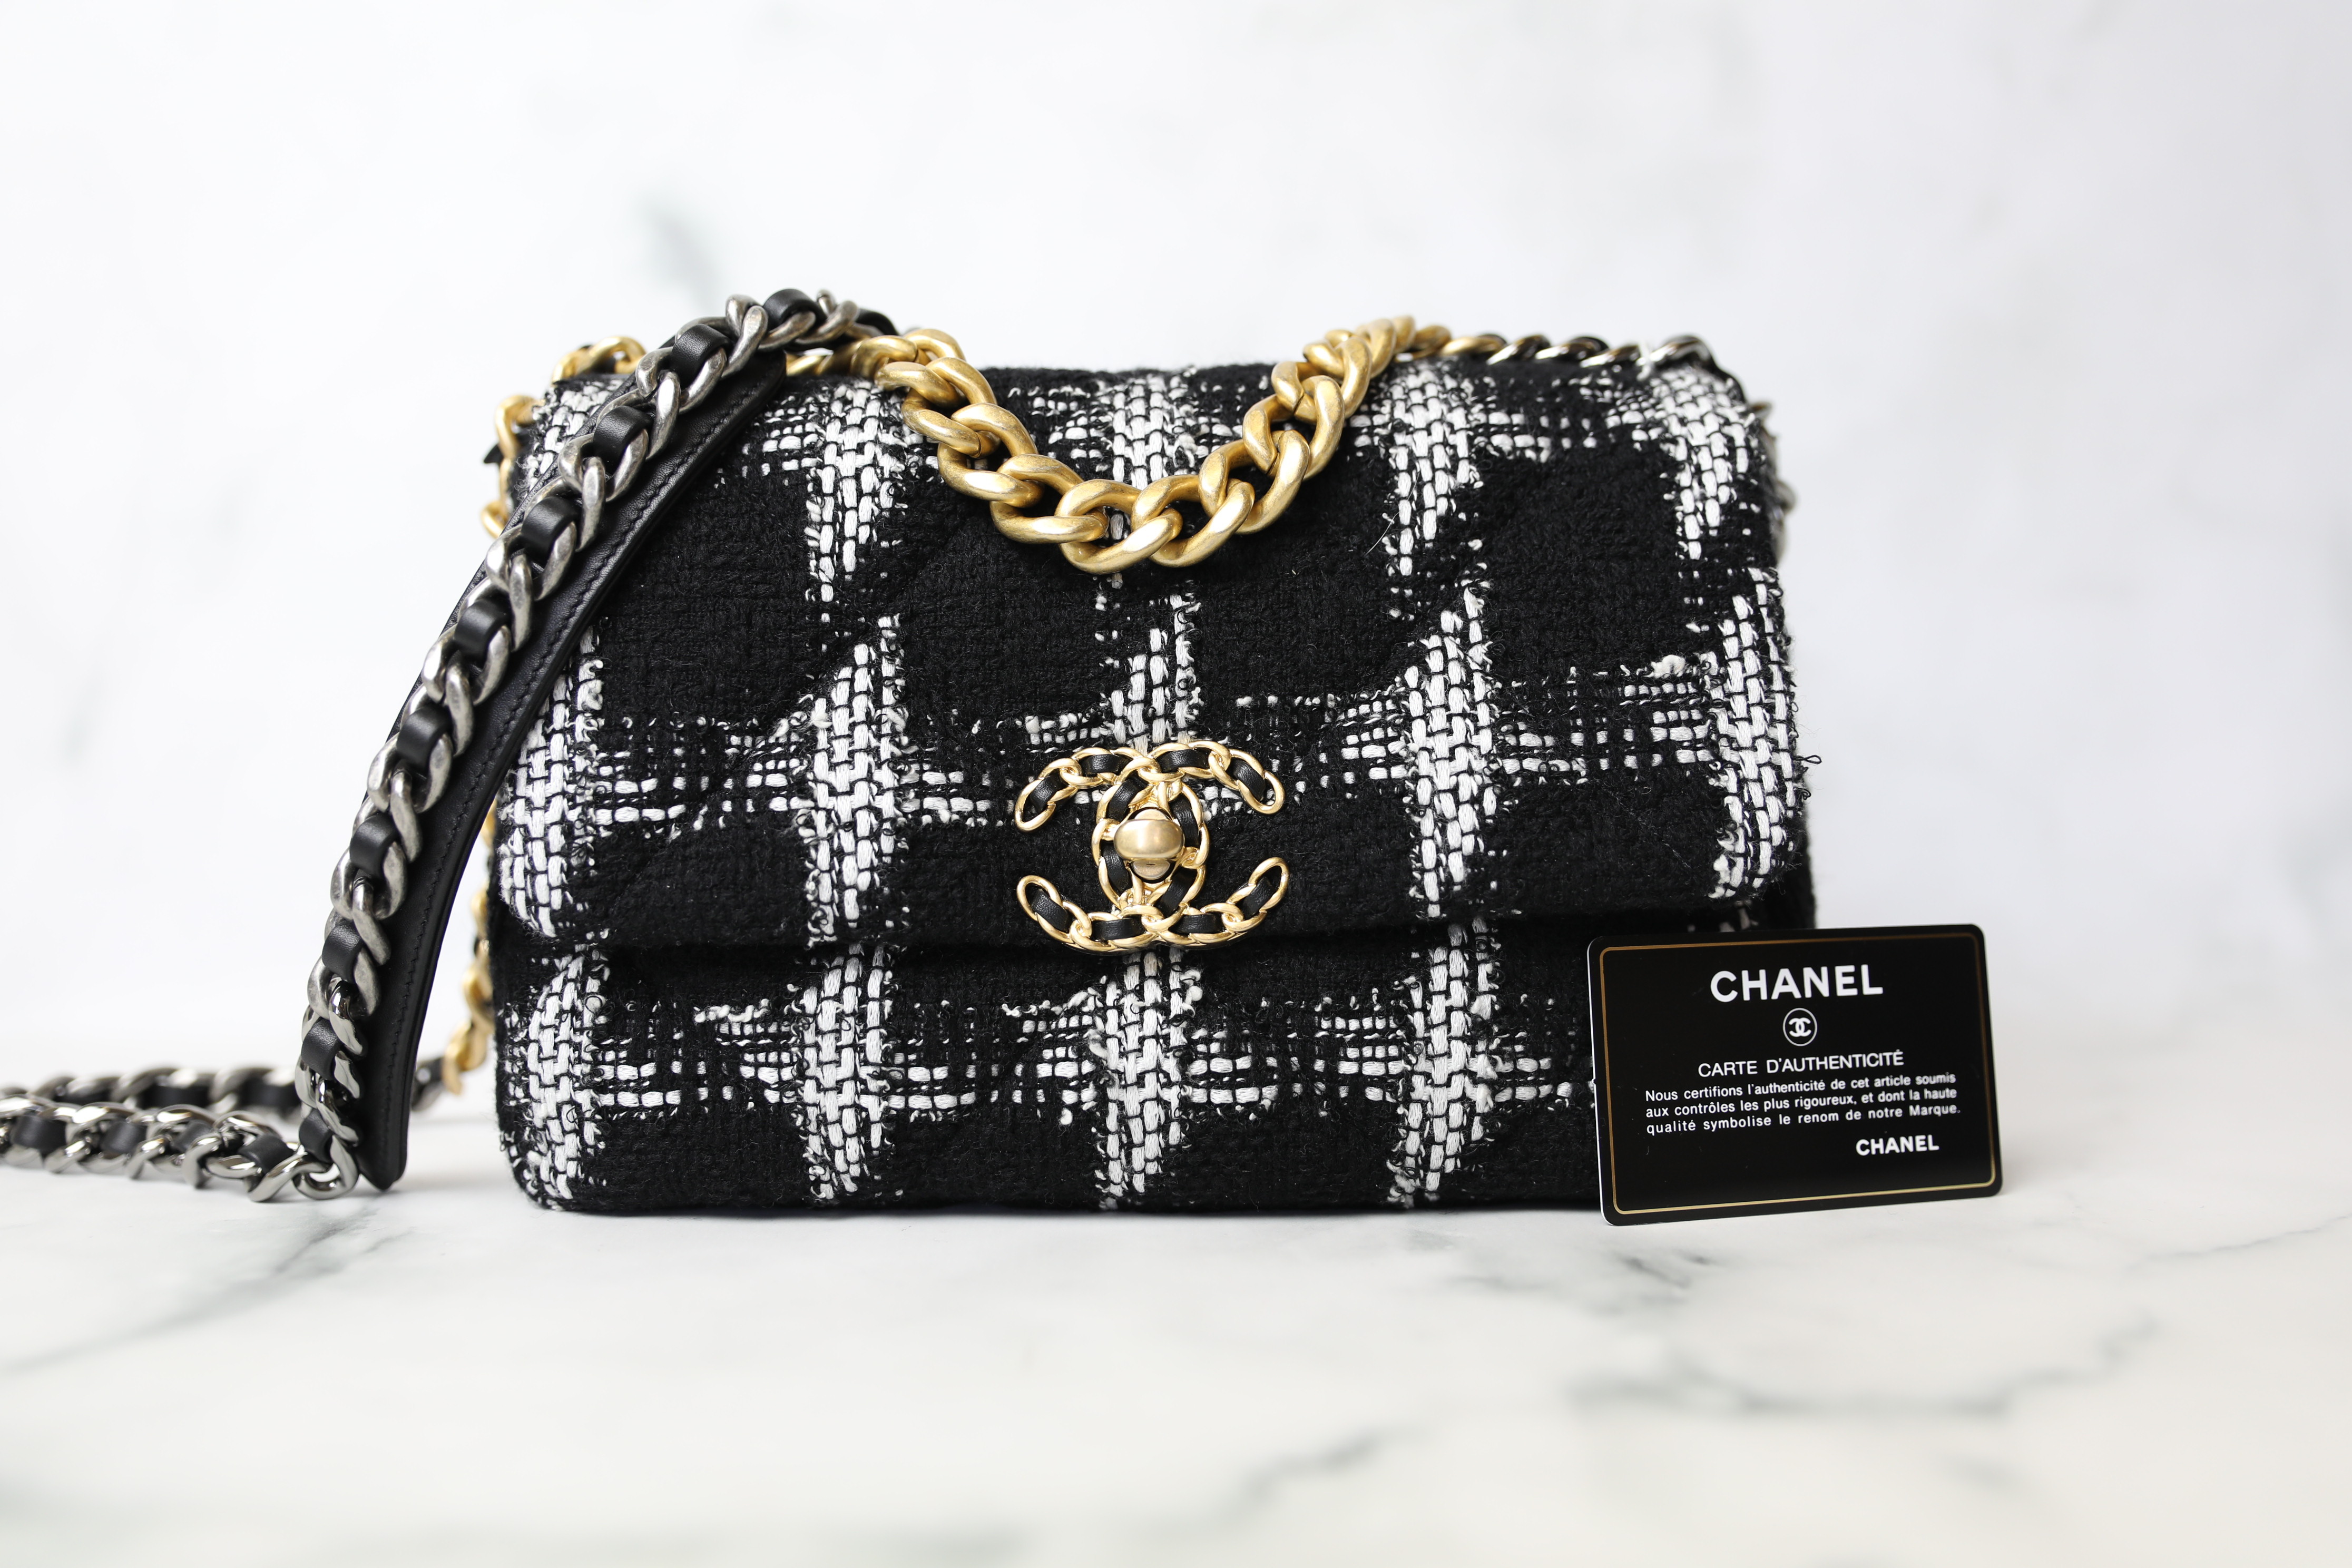 Chanel 19 Small, White Leather with Black/Dark Blue Hardware, New in Box  WA001 - Julia Rose Boston